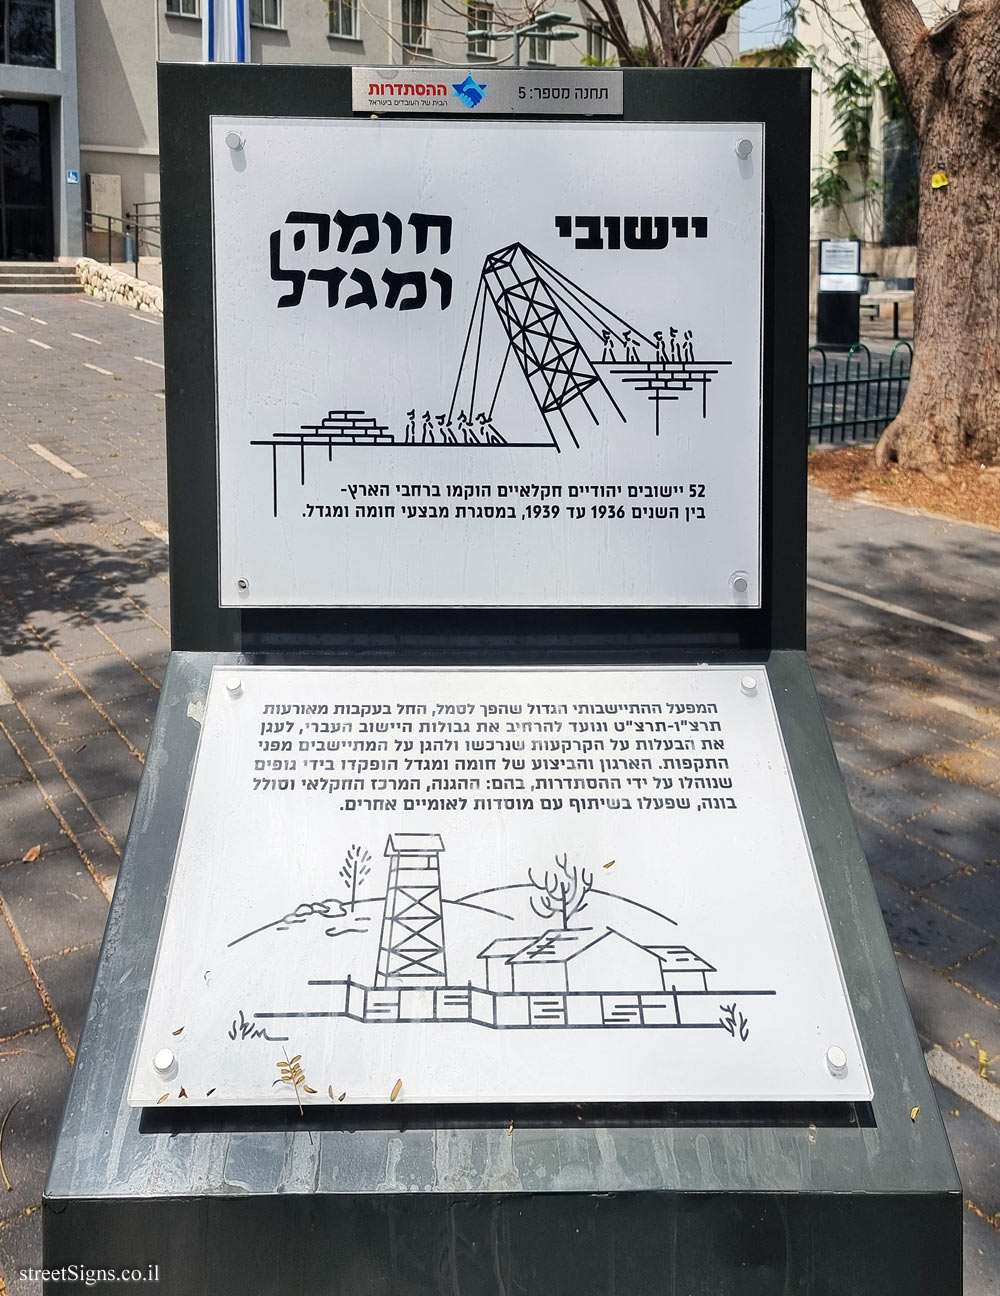 Rishon Lezion - Histadrut Garden - Milestones in the History of the Histadrut - Station 5